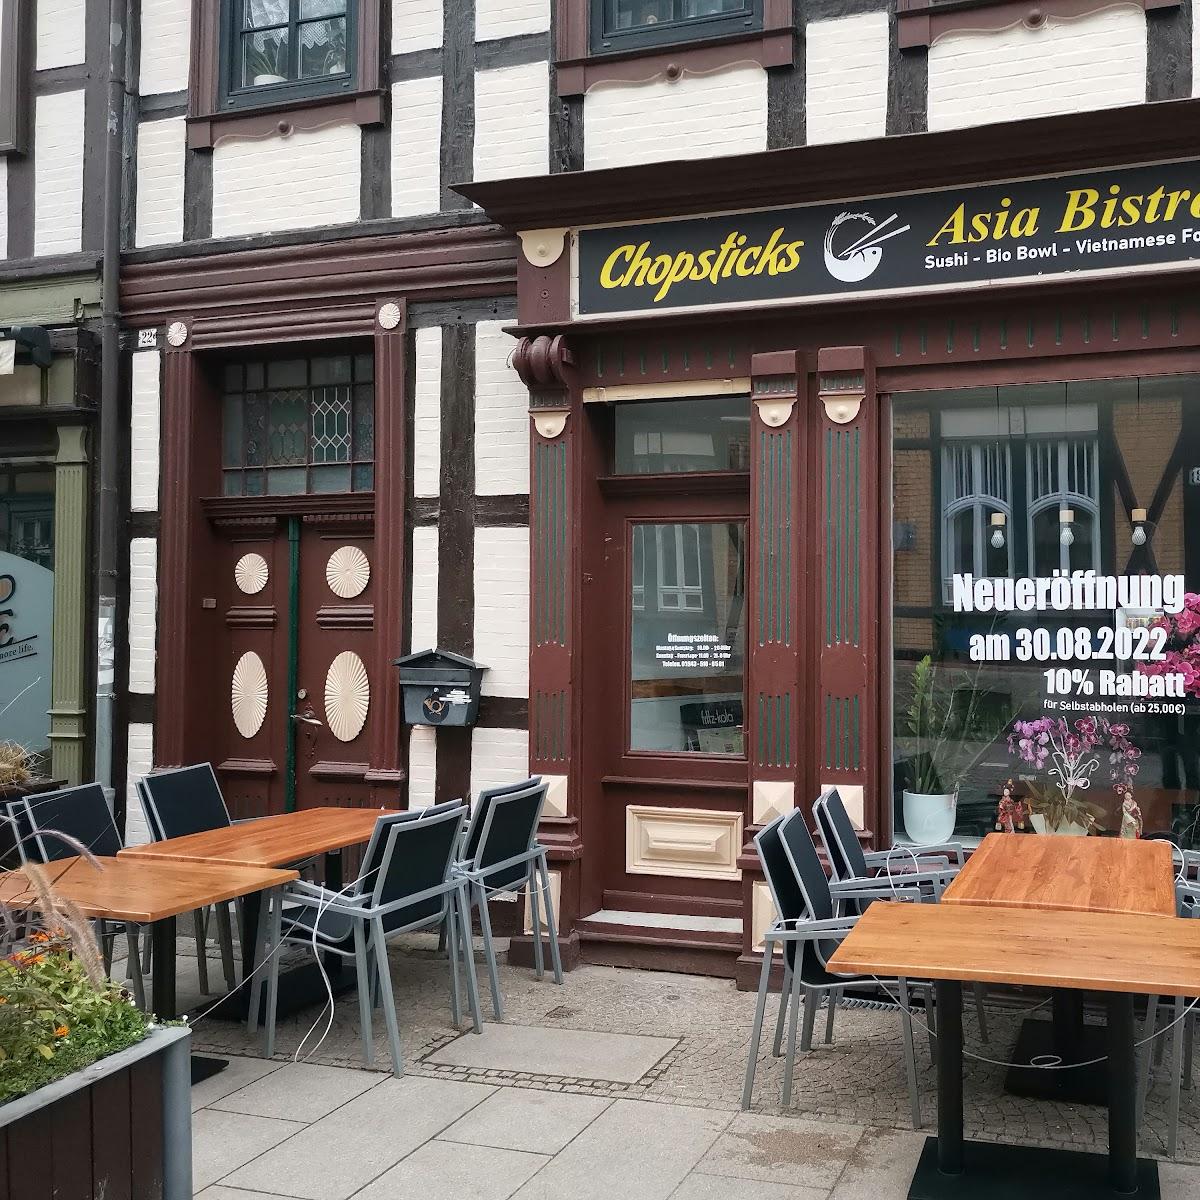 Restaurant "Chopsticks Asia Bistro" in Wernigerode